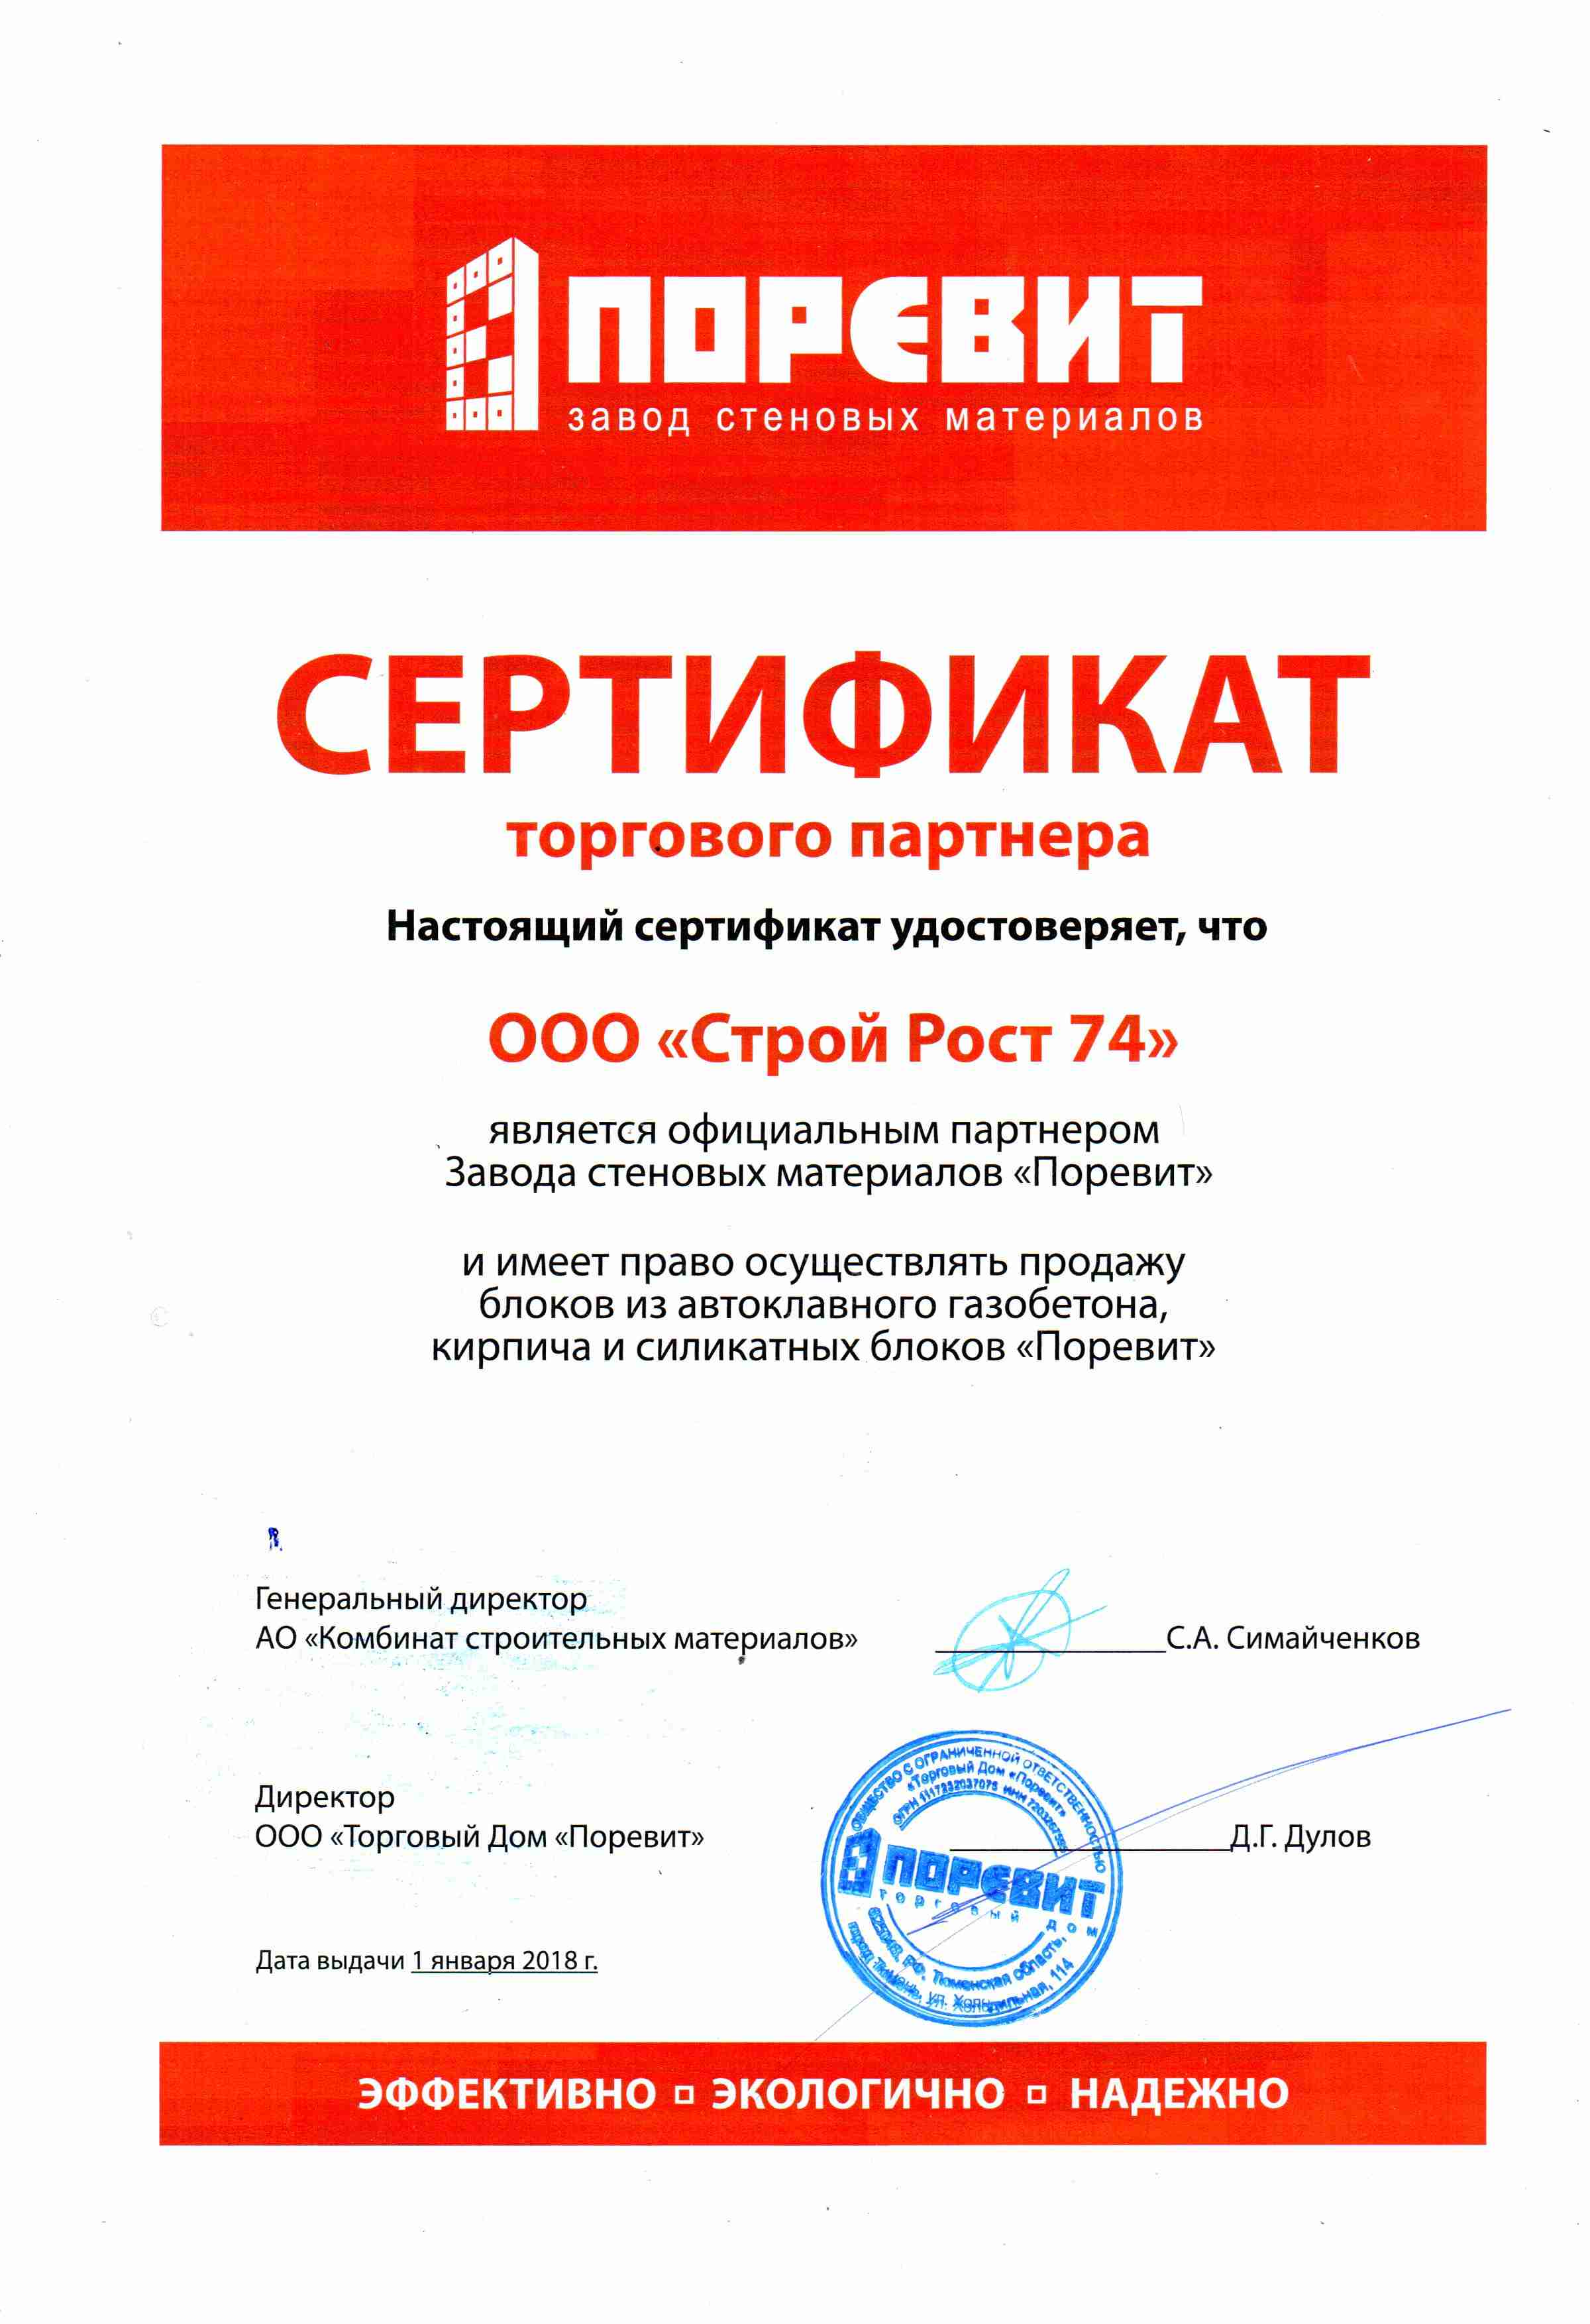 Сертификат торгового партнера